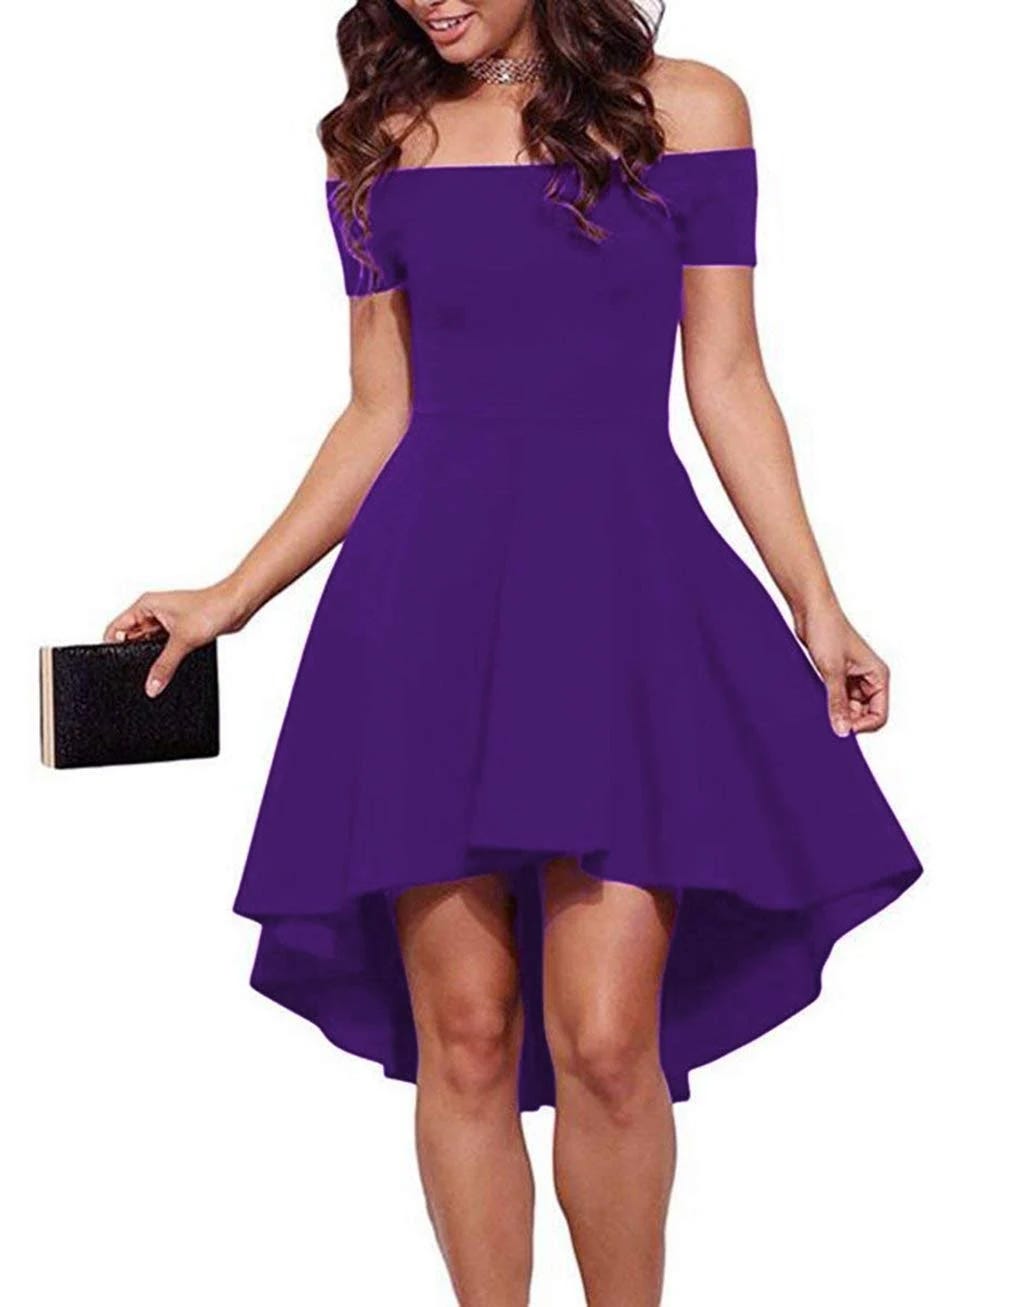 Super Soft Purple High Low Off-Shoulder Cocktail Dress | Image